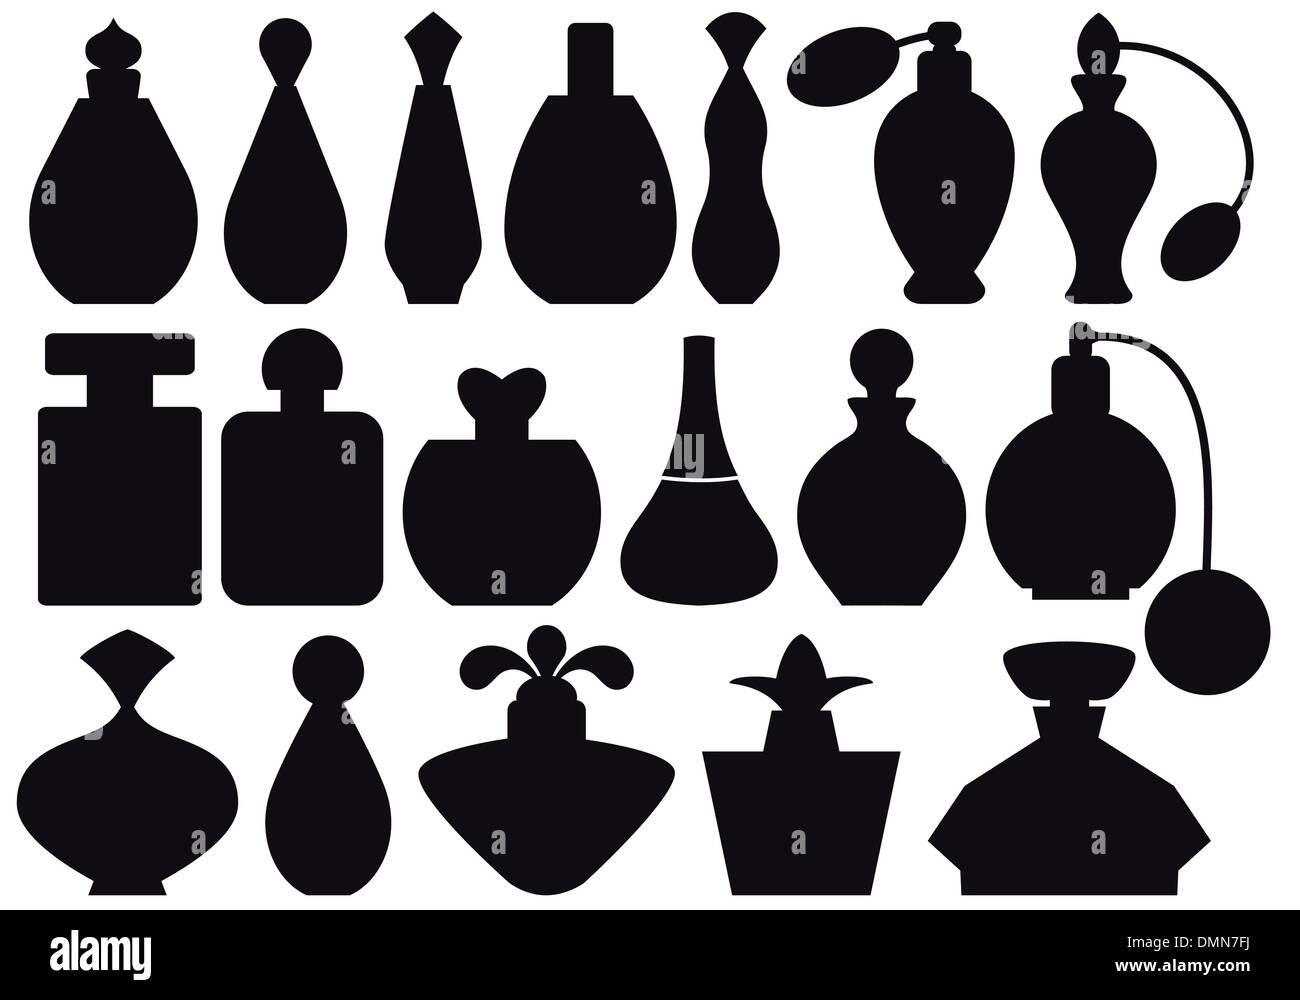 Flacons de parfum, vector Illustration de Vecteur